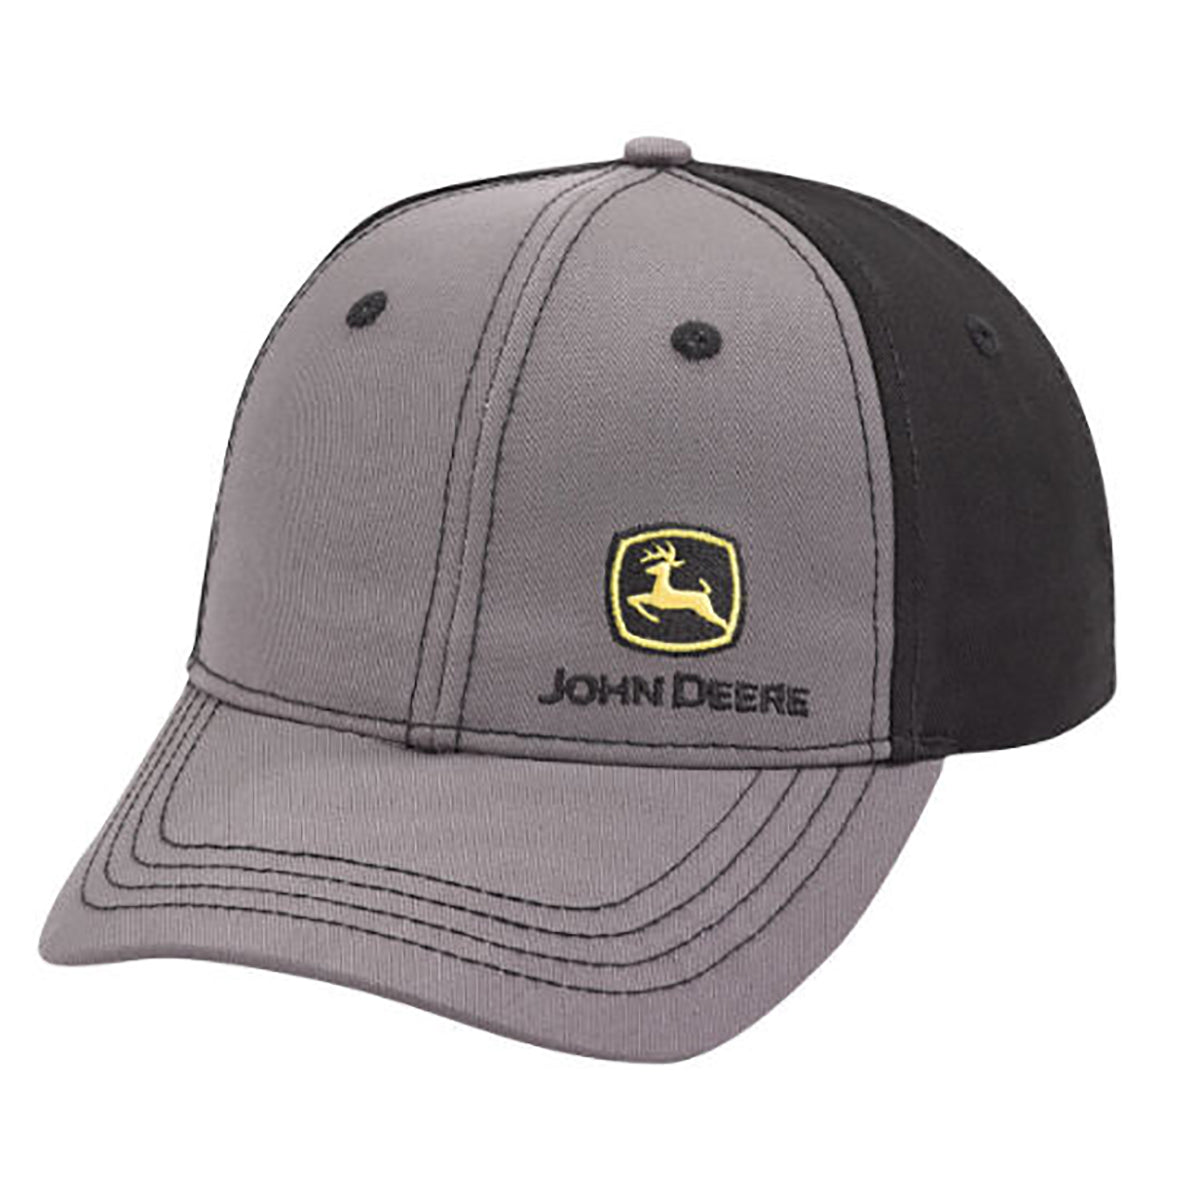 John Deere Men's Gray and Black Chino Hat